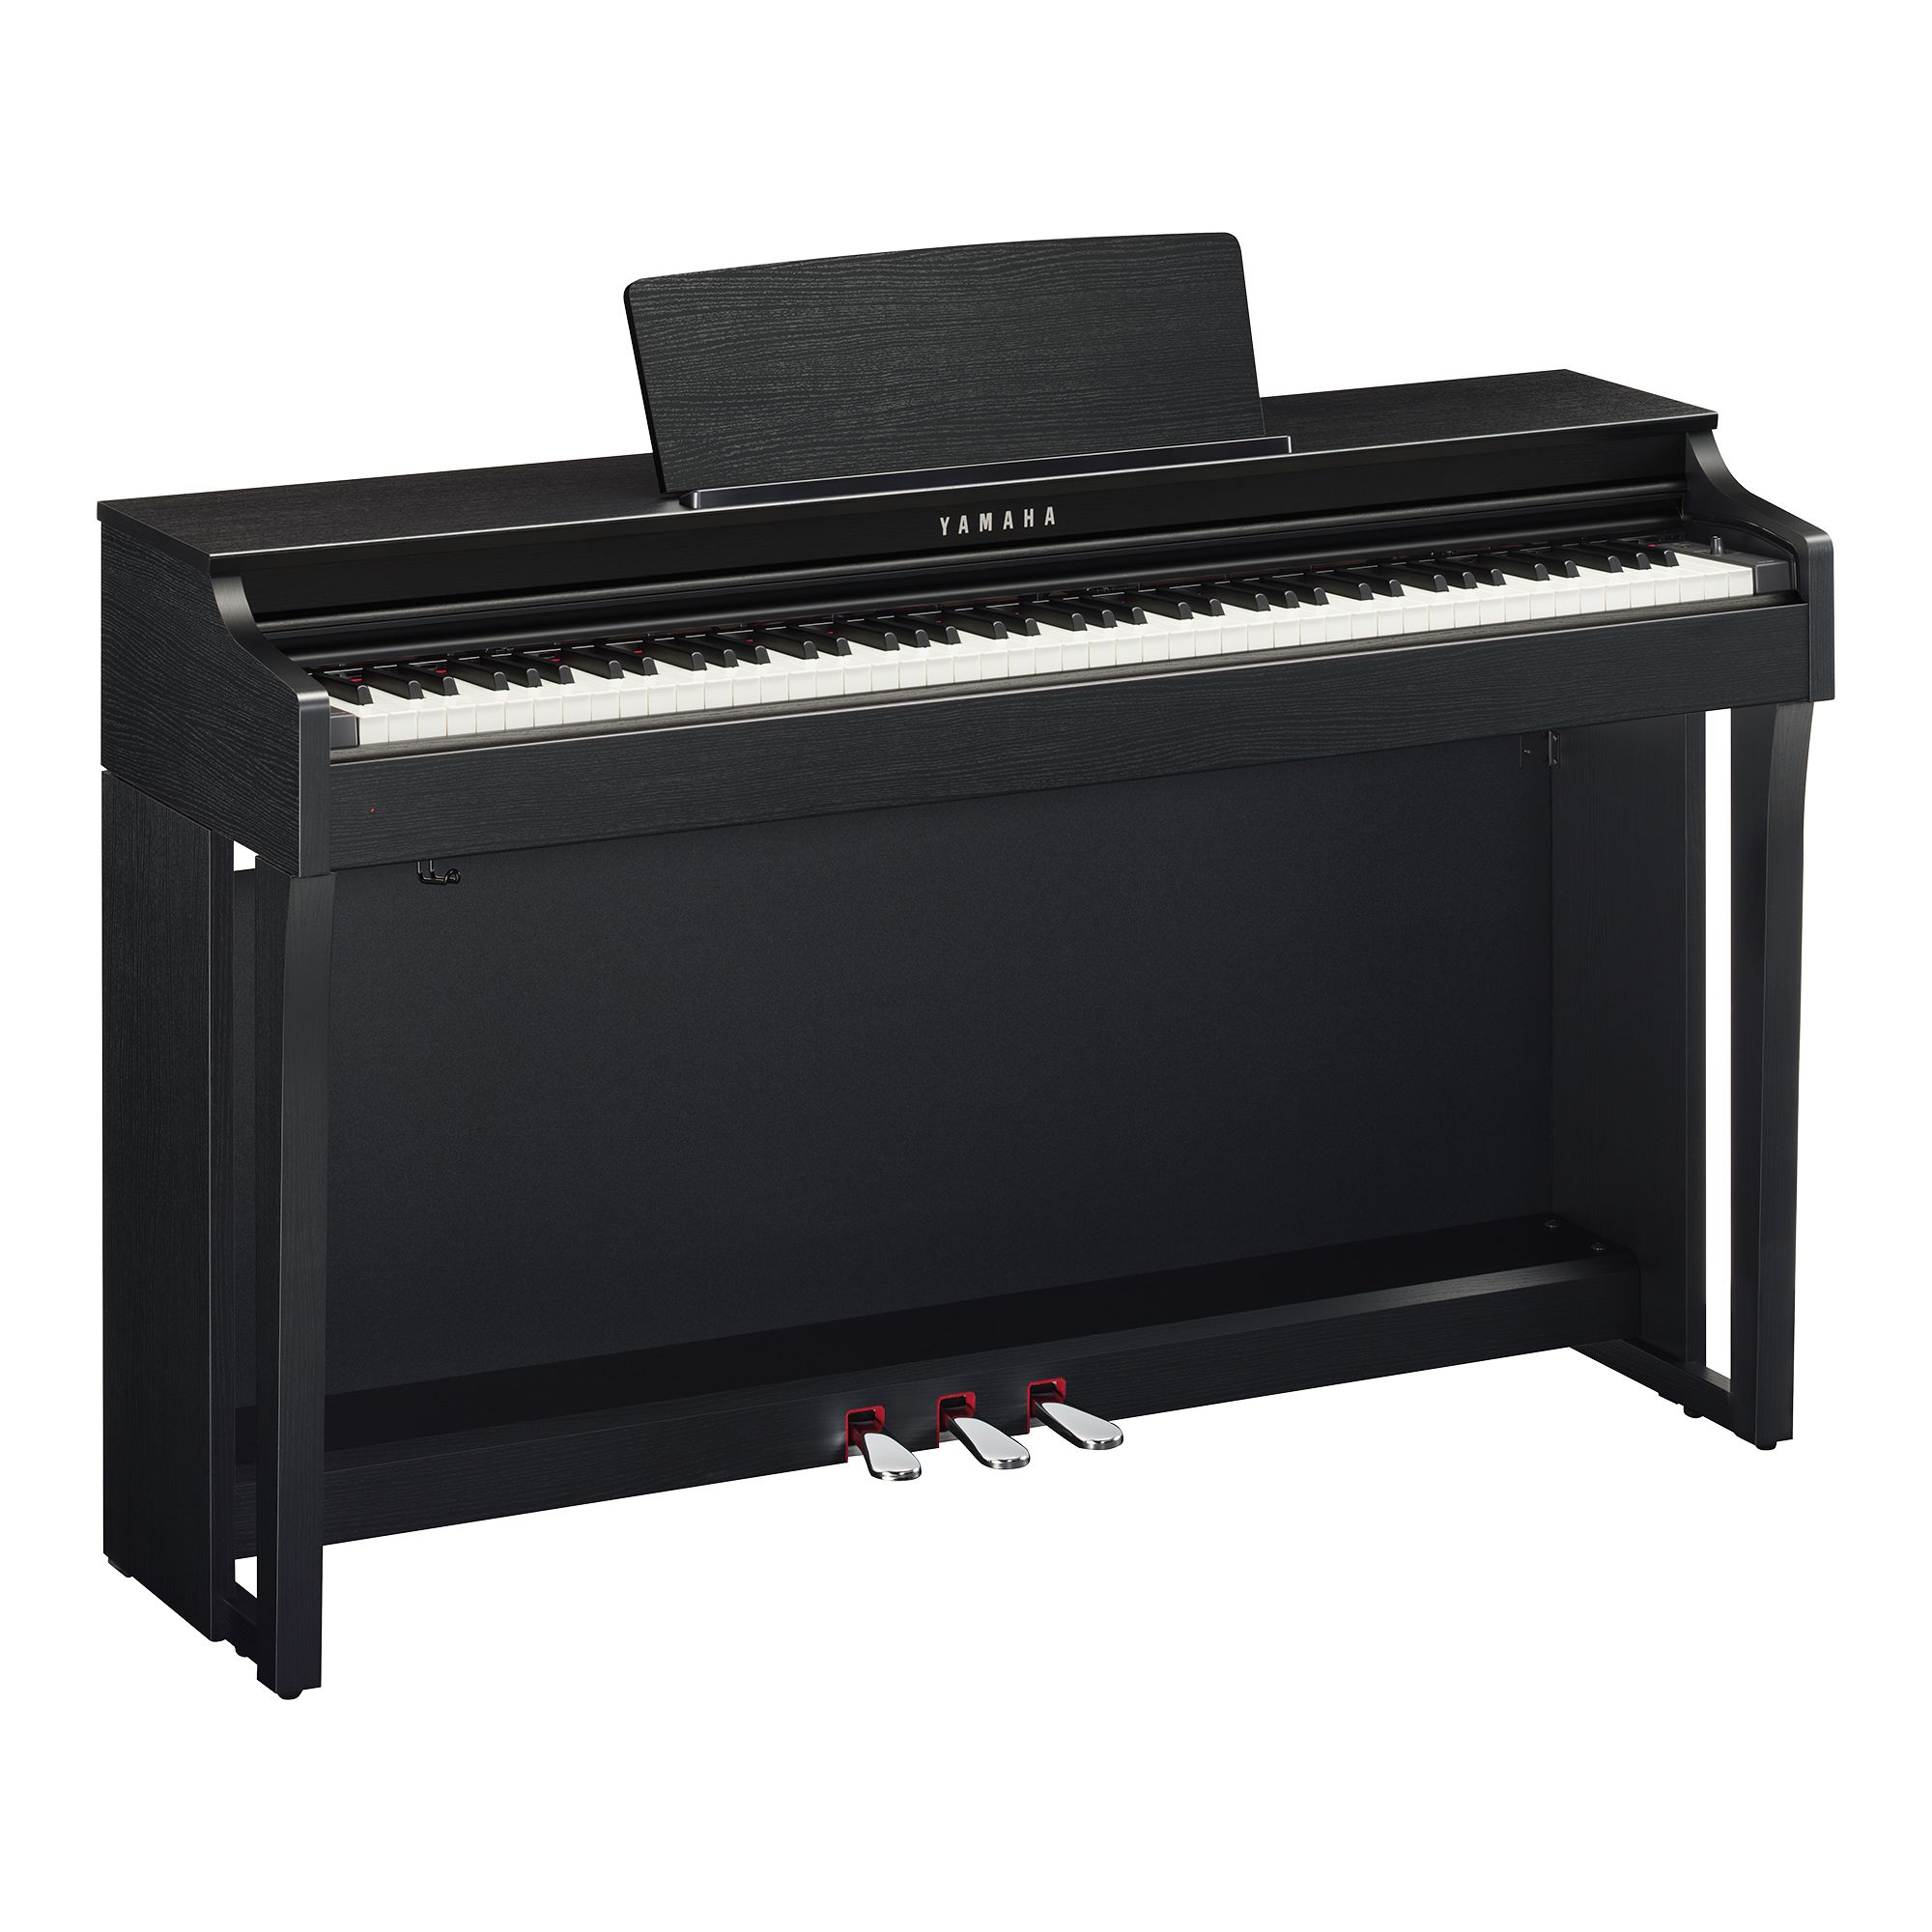 Piano Điện Yamaha CLP-625 Dòng Clavinova Cao Cấp, Hiện Đại ...